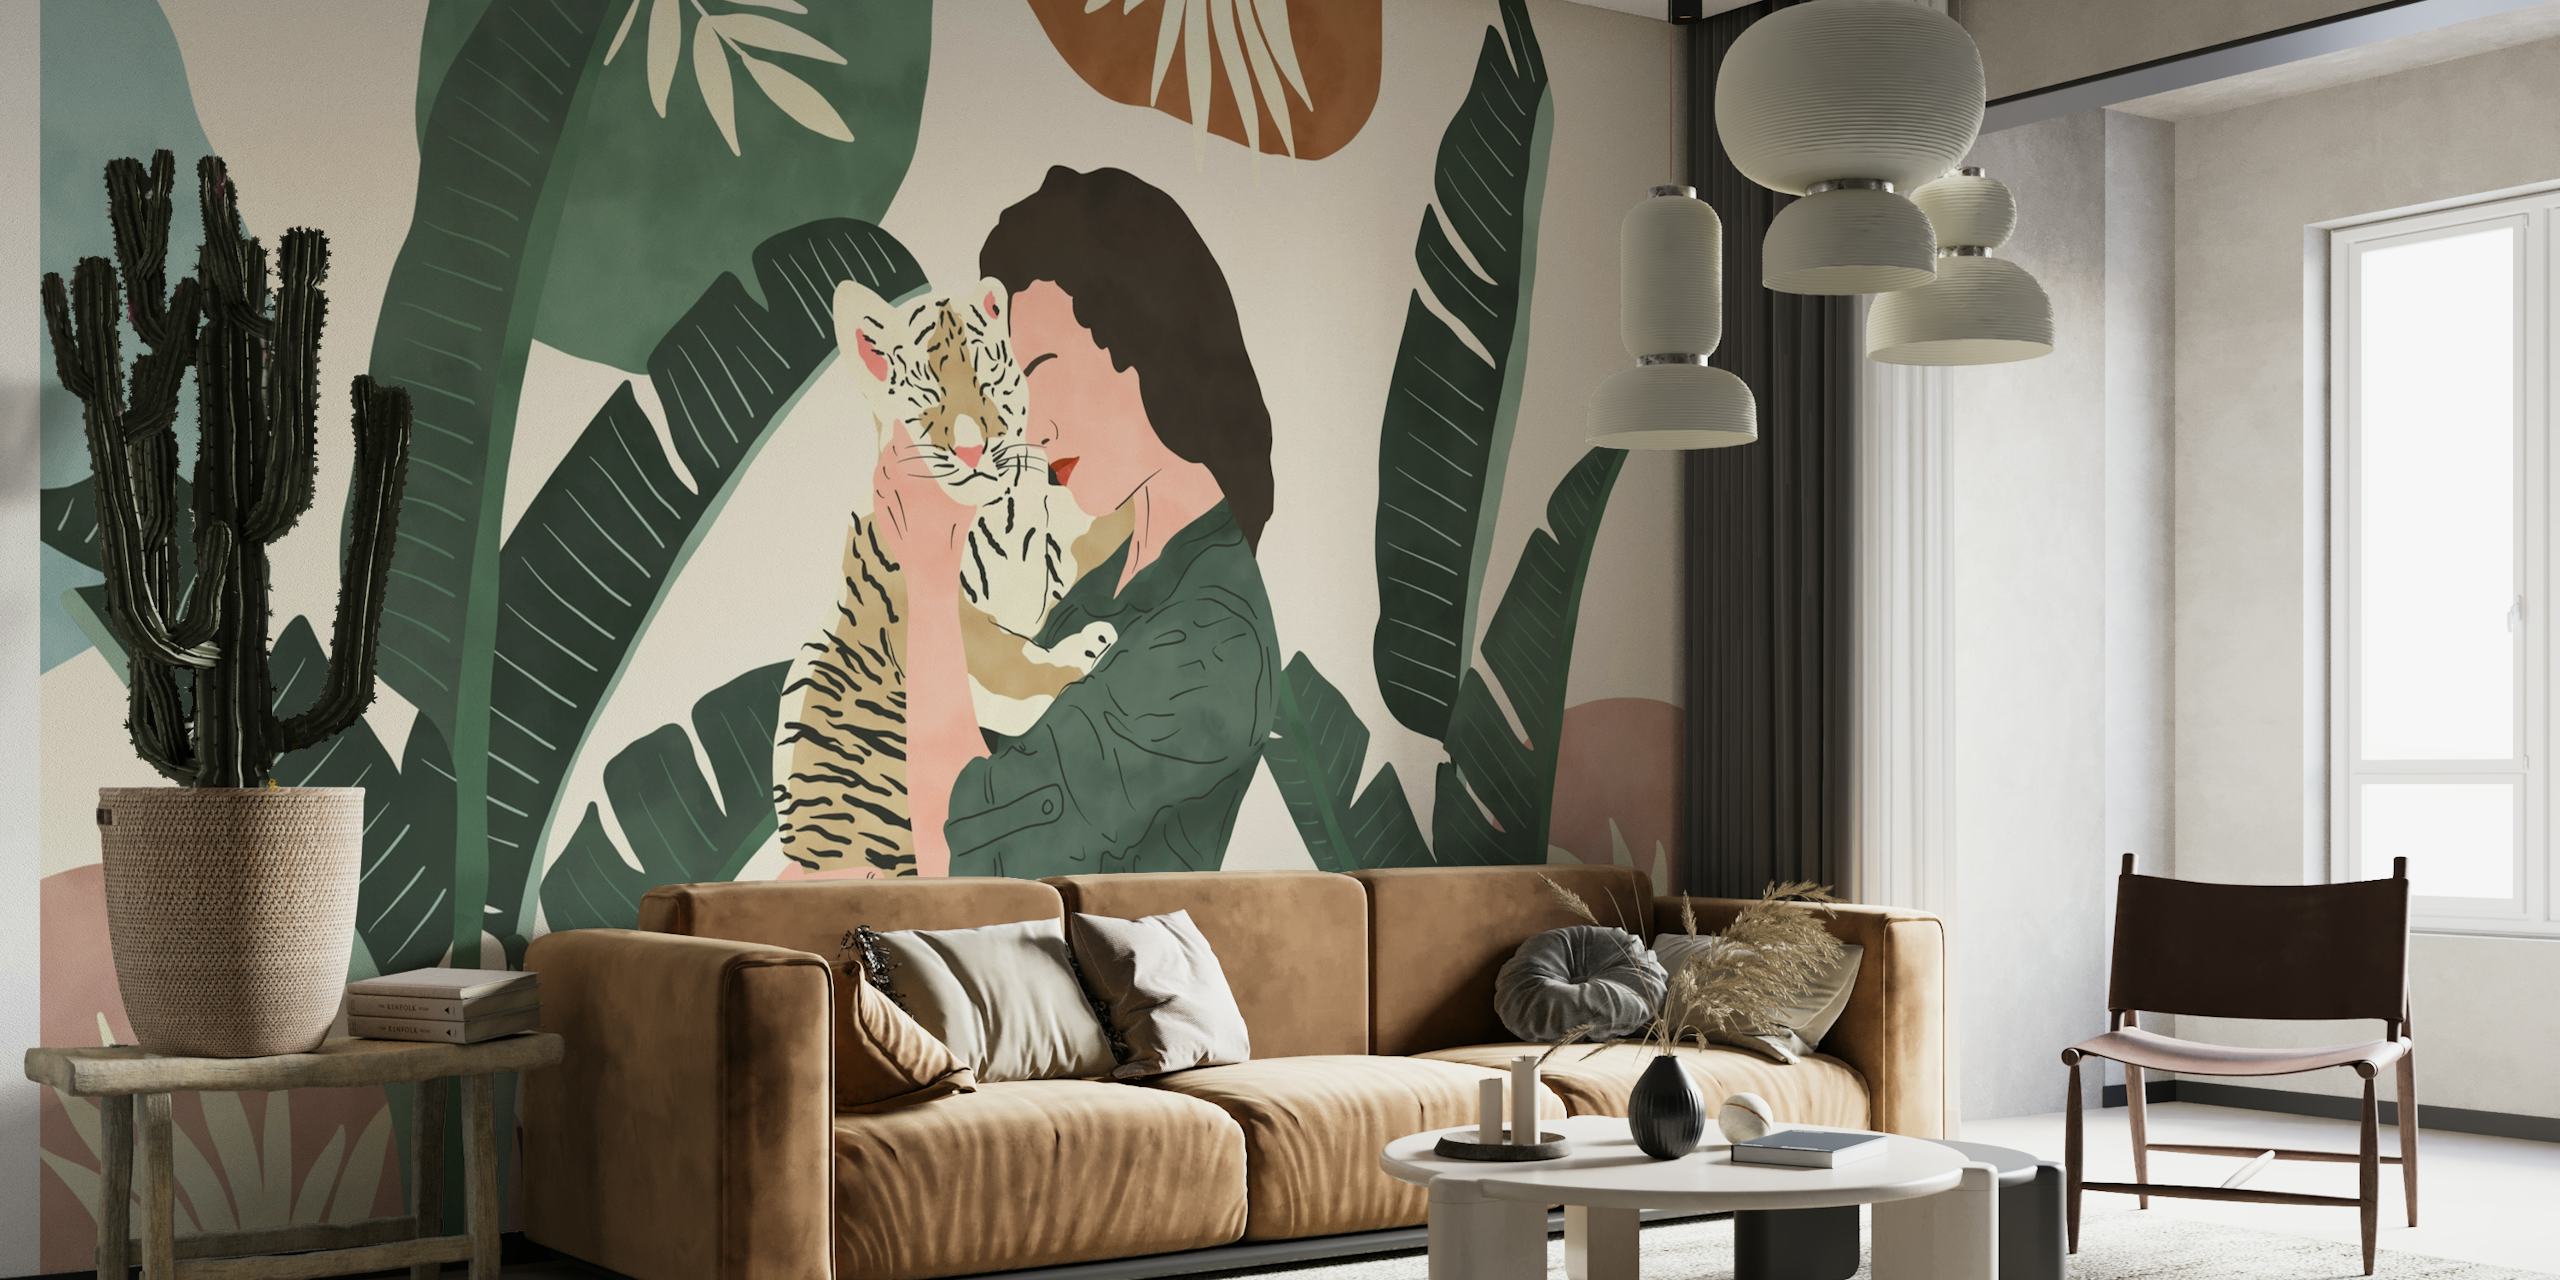 Illustration einer Person, die inmitten tropischer Blätter einen Tiger umarmt, auf einem Wandgemälde